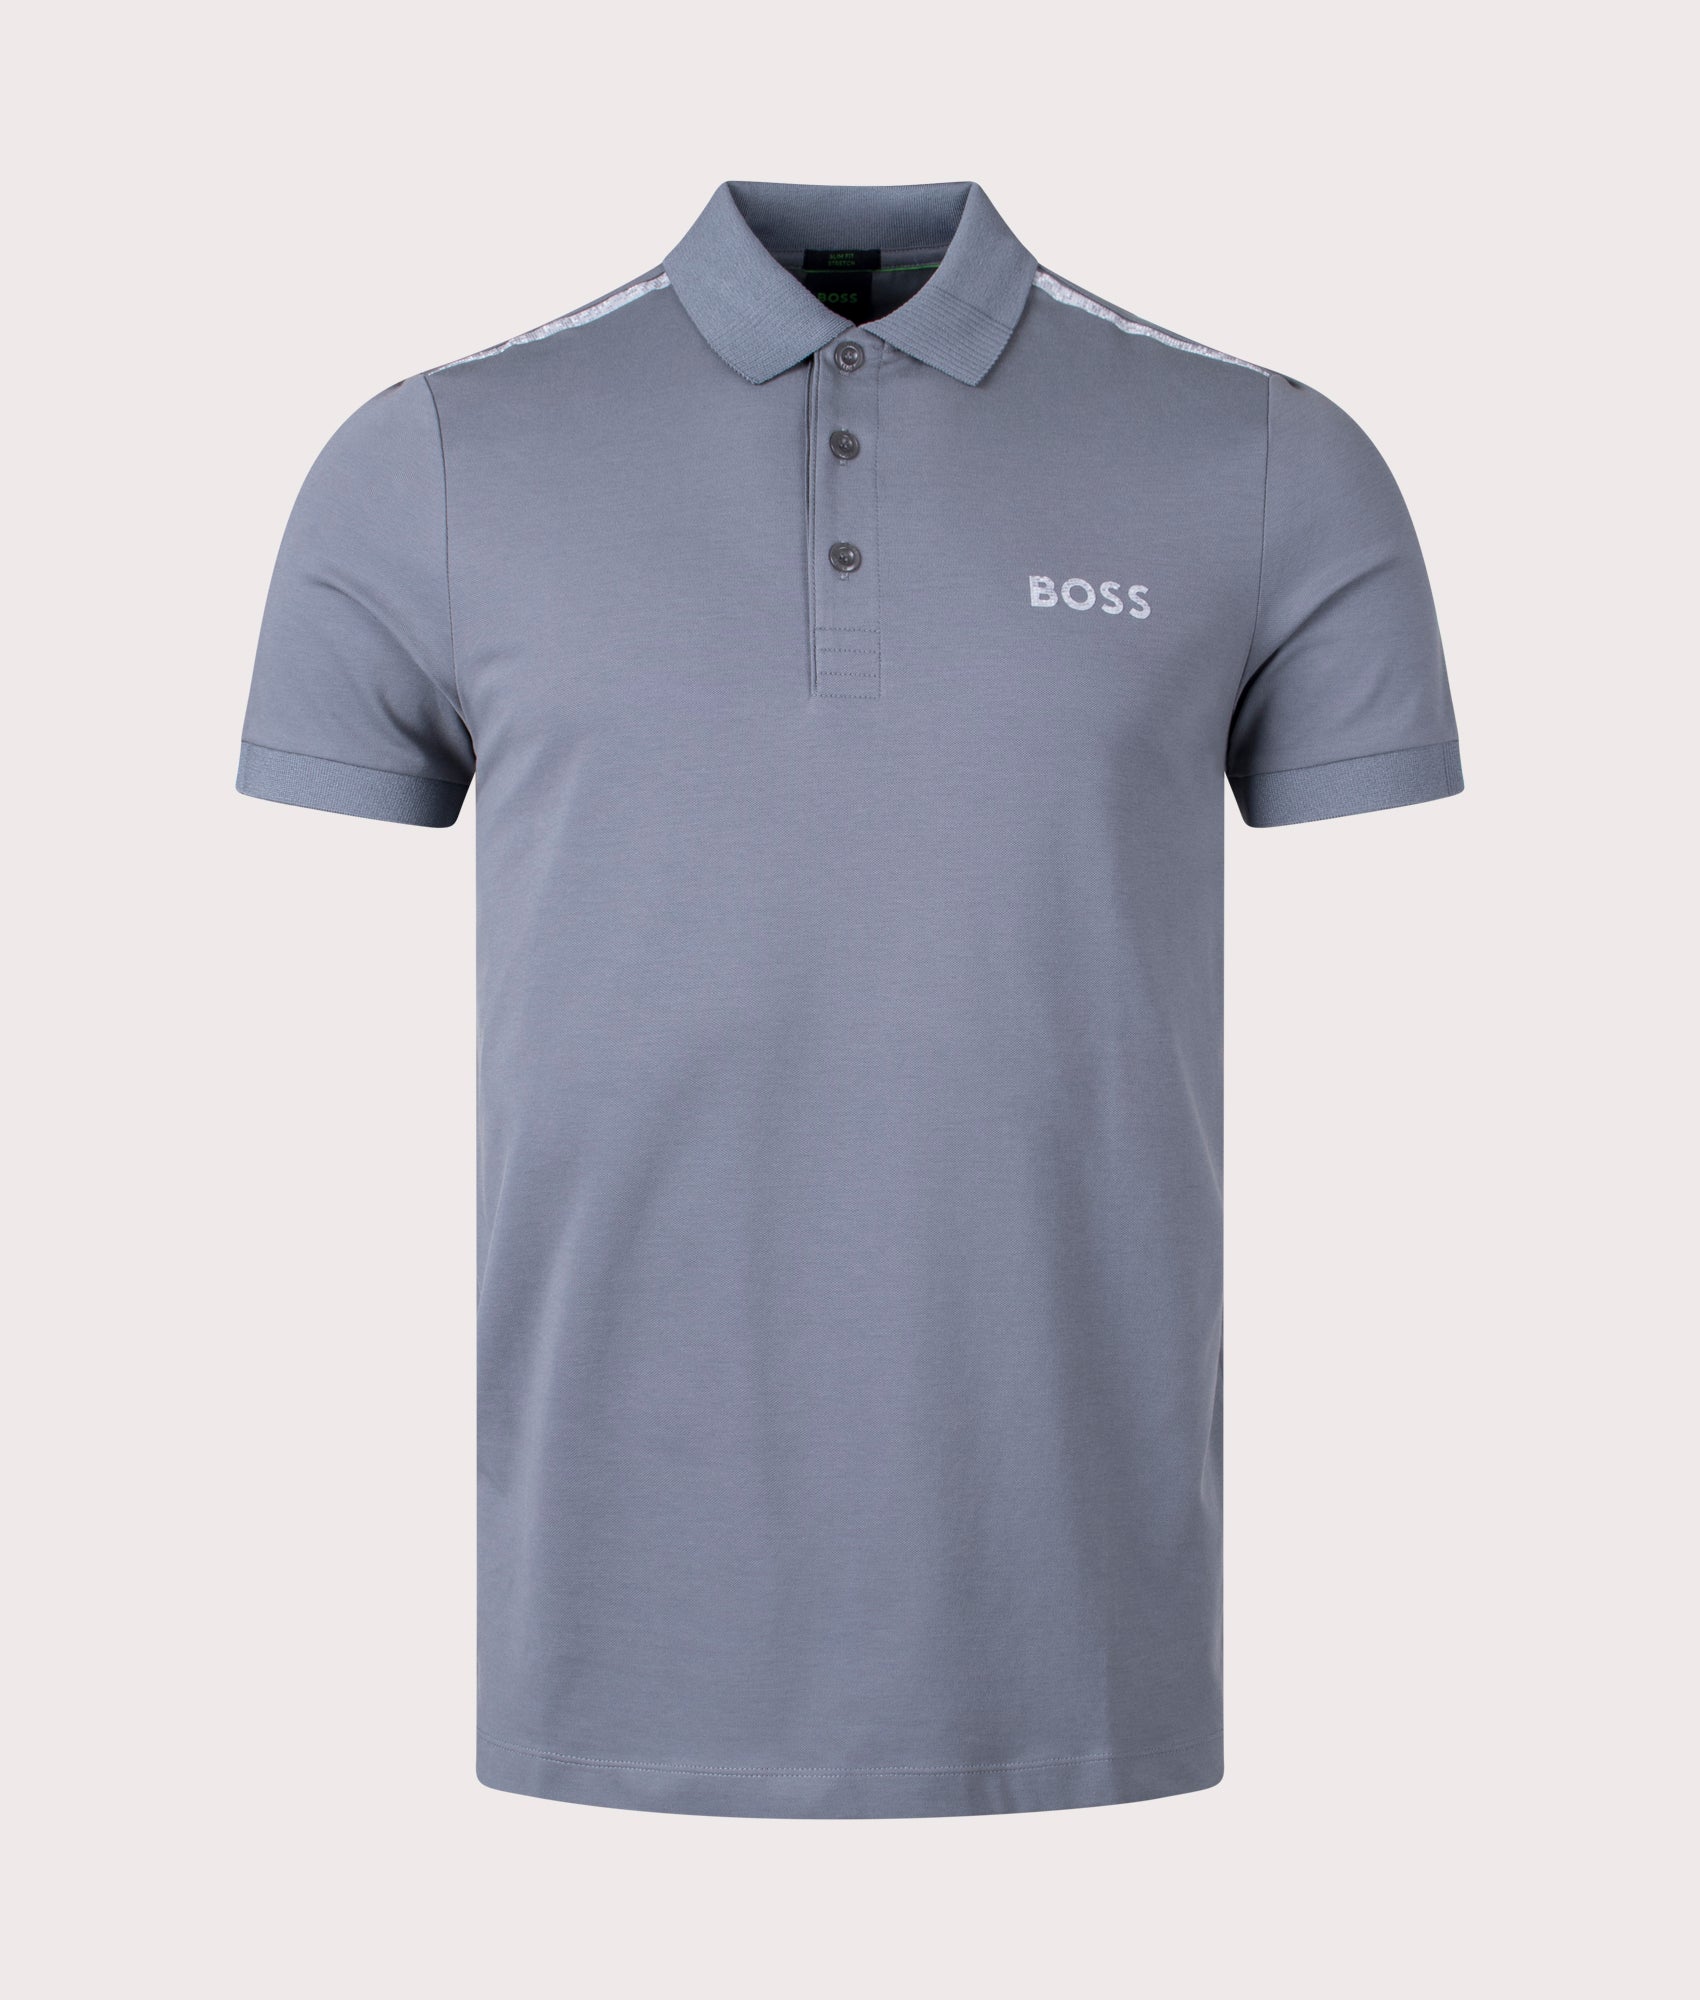 BOSS Mens Slim Fit Paule Mirror Polo Shirt - Colour: 036 Medium Grey - Size: Medium